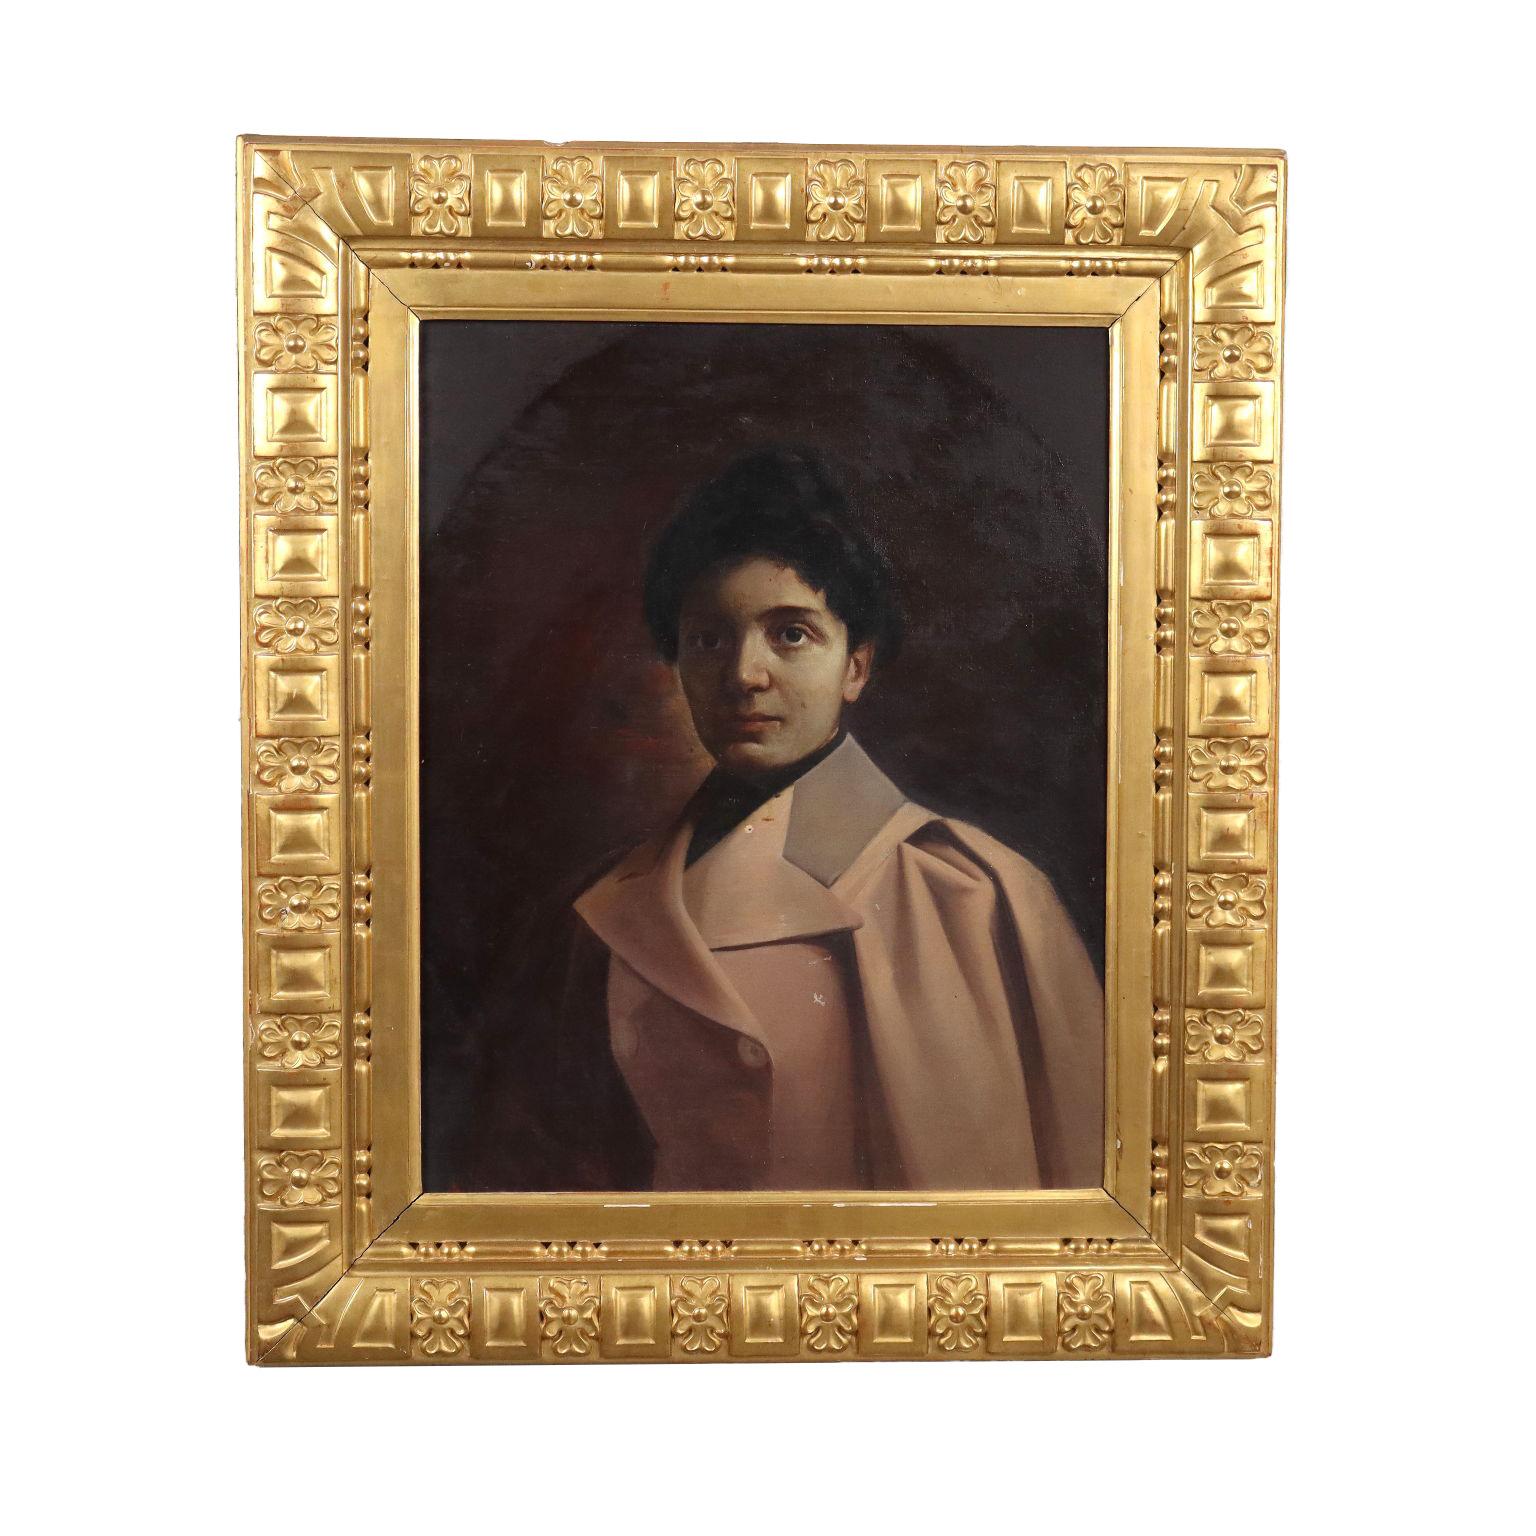 Unknown Portrait Painting - Ritratto Femminile di Inizio '900